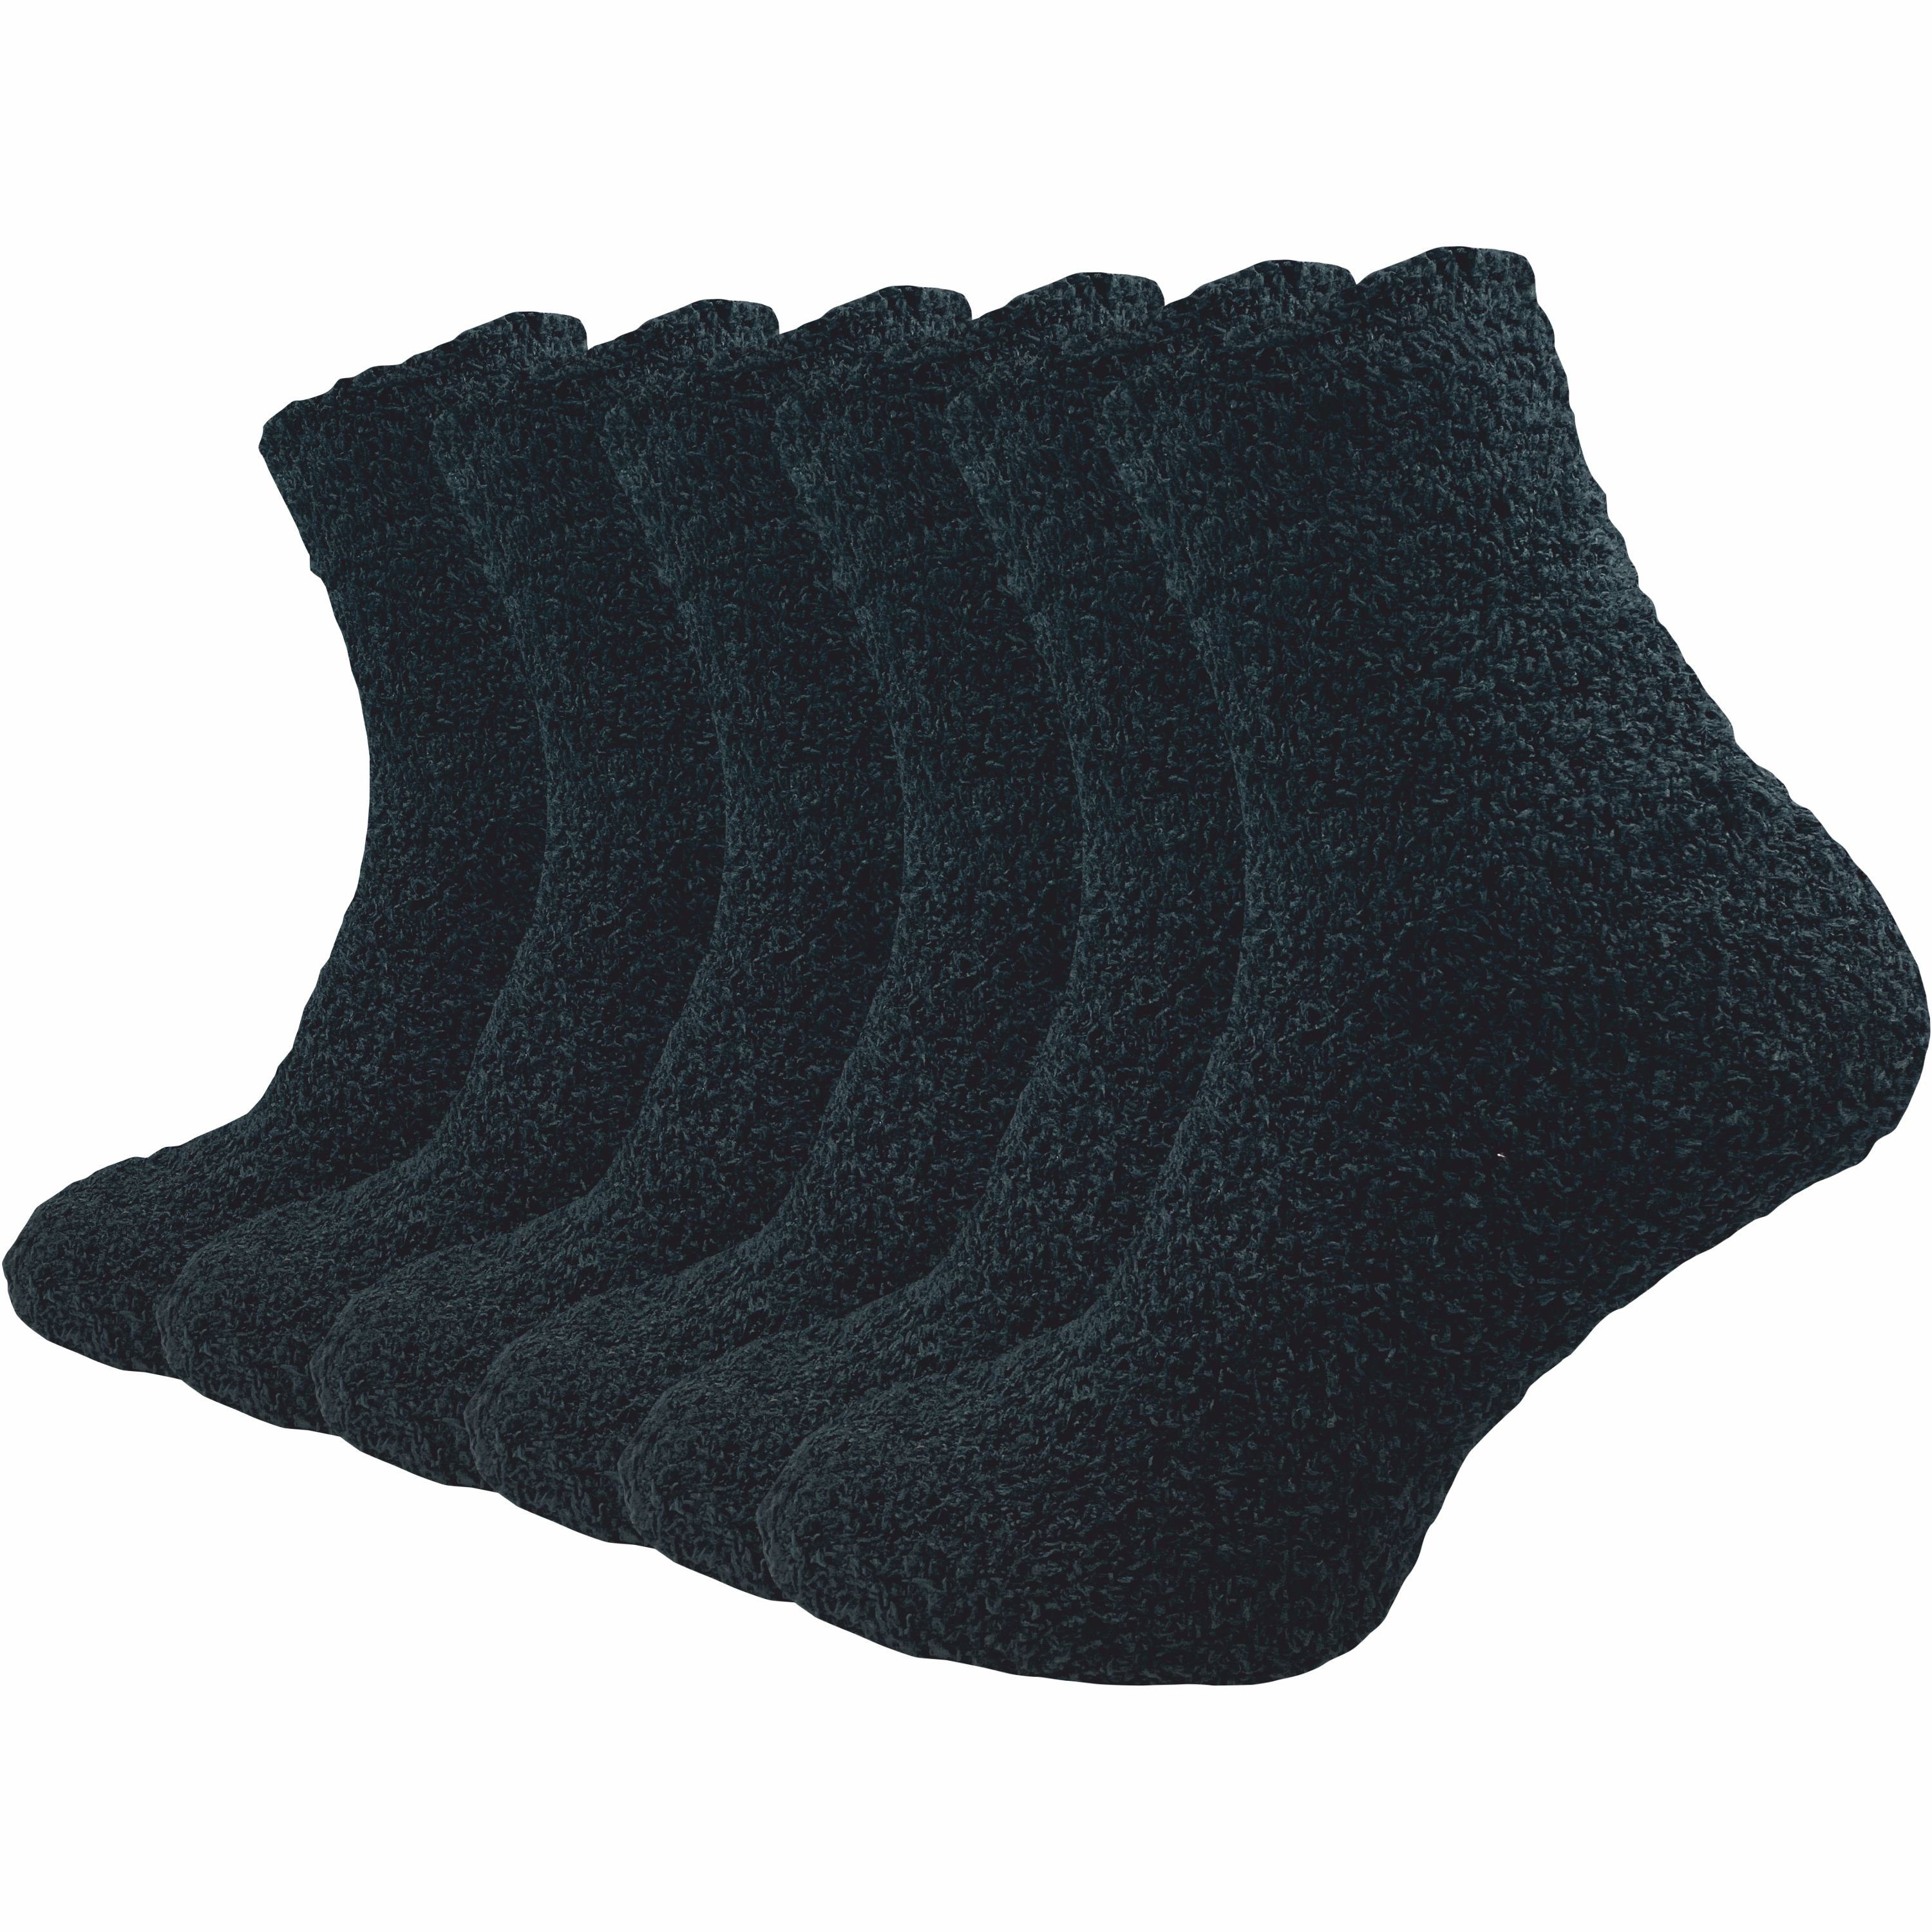 GAWILO Kuschelsocken für Damen für Haussocken - Paar) aus extra & flauschig an kalten (6 Material weich warme schwarz Tagen optimalen Tragekomfort für Füße flauschigem